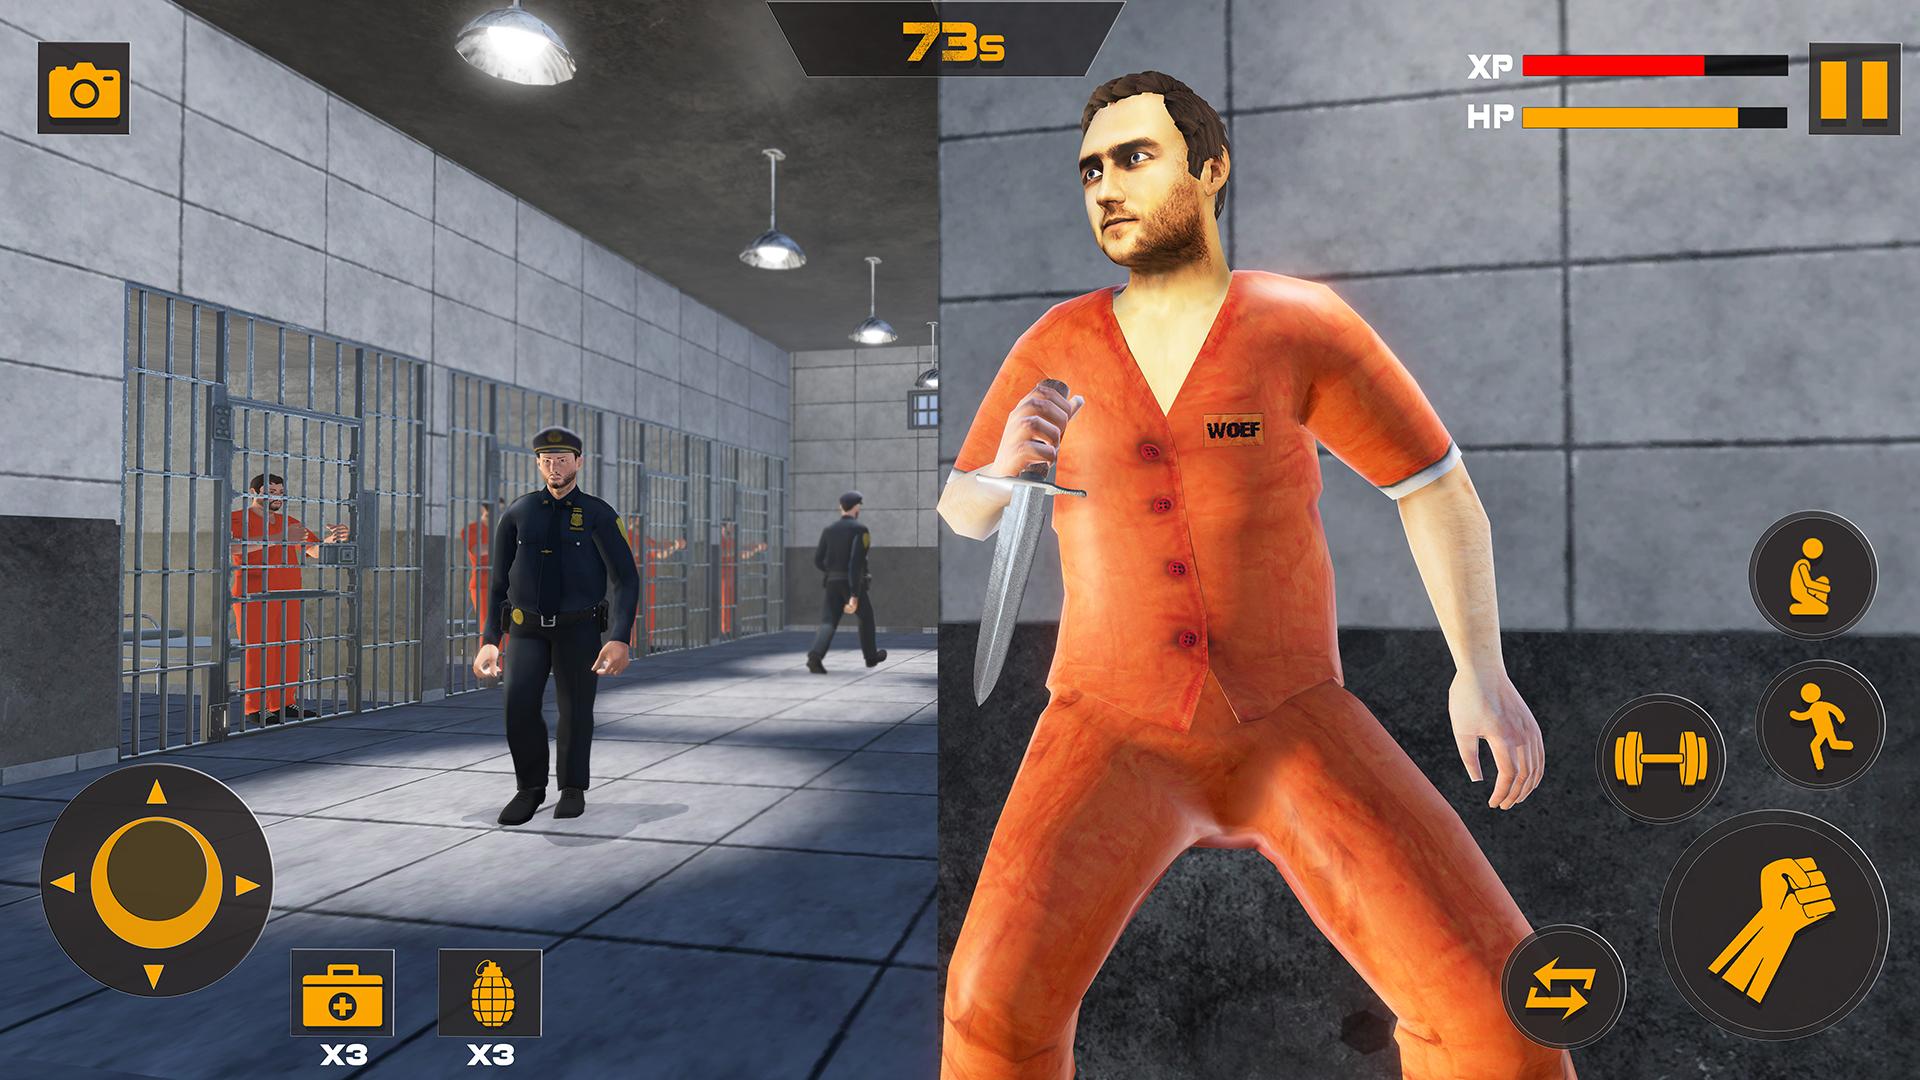 Escape Plan : Puzzle Prison Escape APK pour Android Télécharger